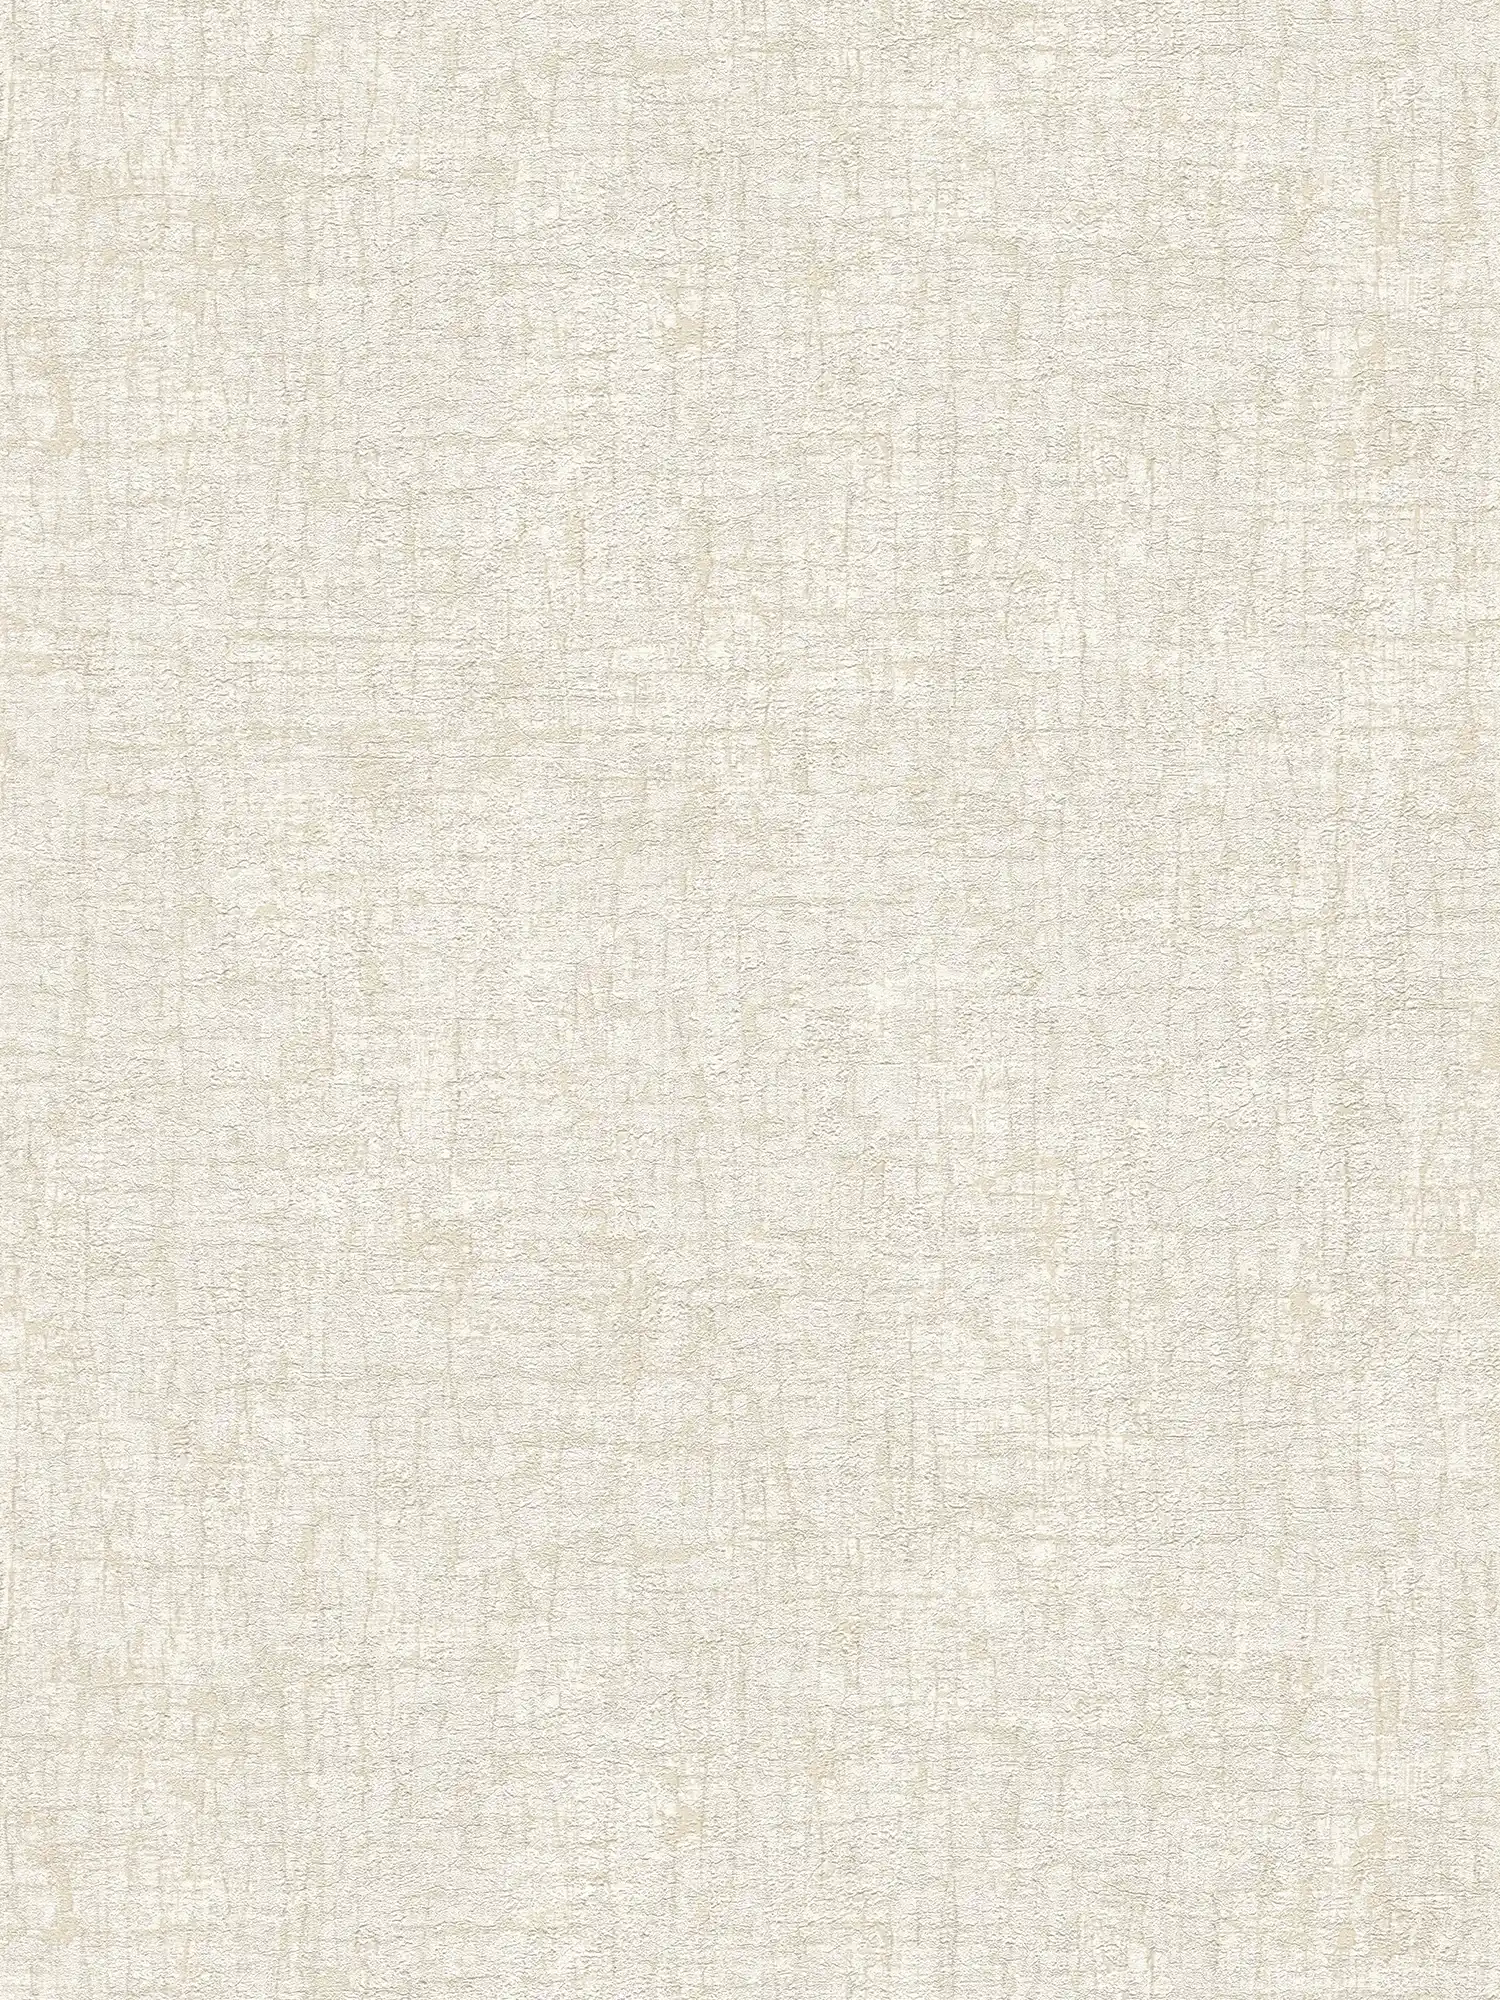 Carta da parati non tessuta con texture in colori tenui dall'aspetto tessile - bianco, beige, crema
